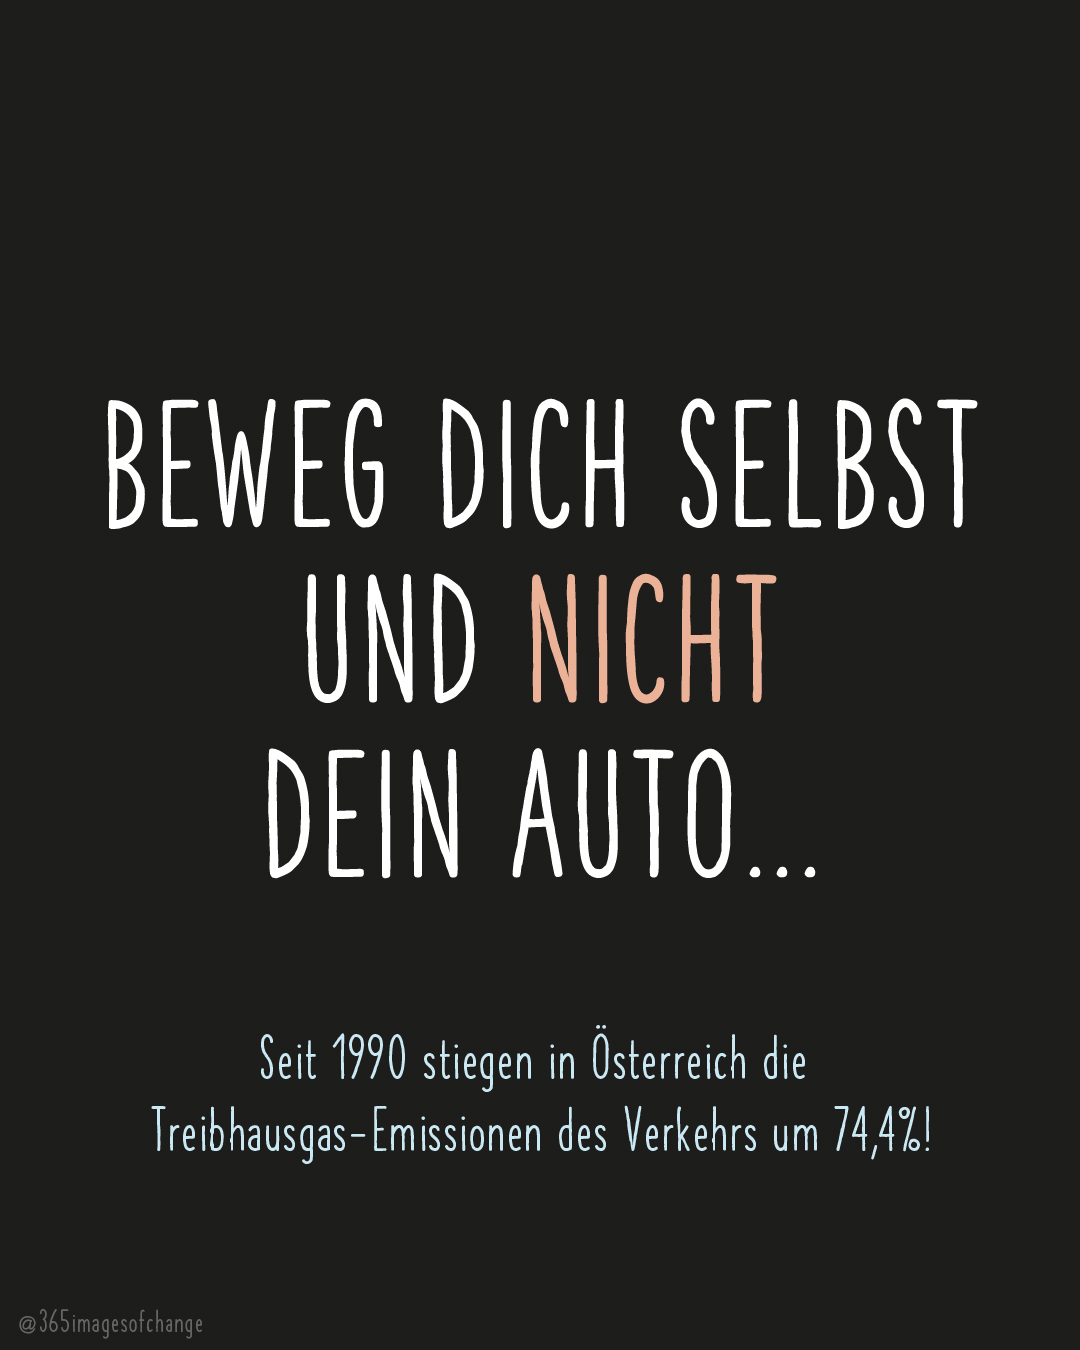 Weiß auf schwarzem Hintergrund: Beweg dich selbst und nicht dein Auto... Seit 1990 stiegen in Österreich die Treibhausgas-Emissionen des Verkehrs um 74,4%